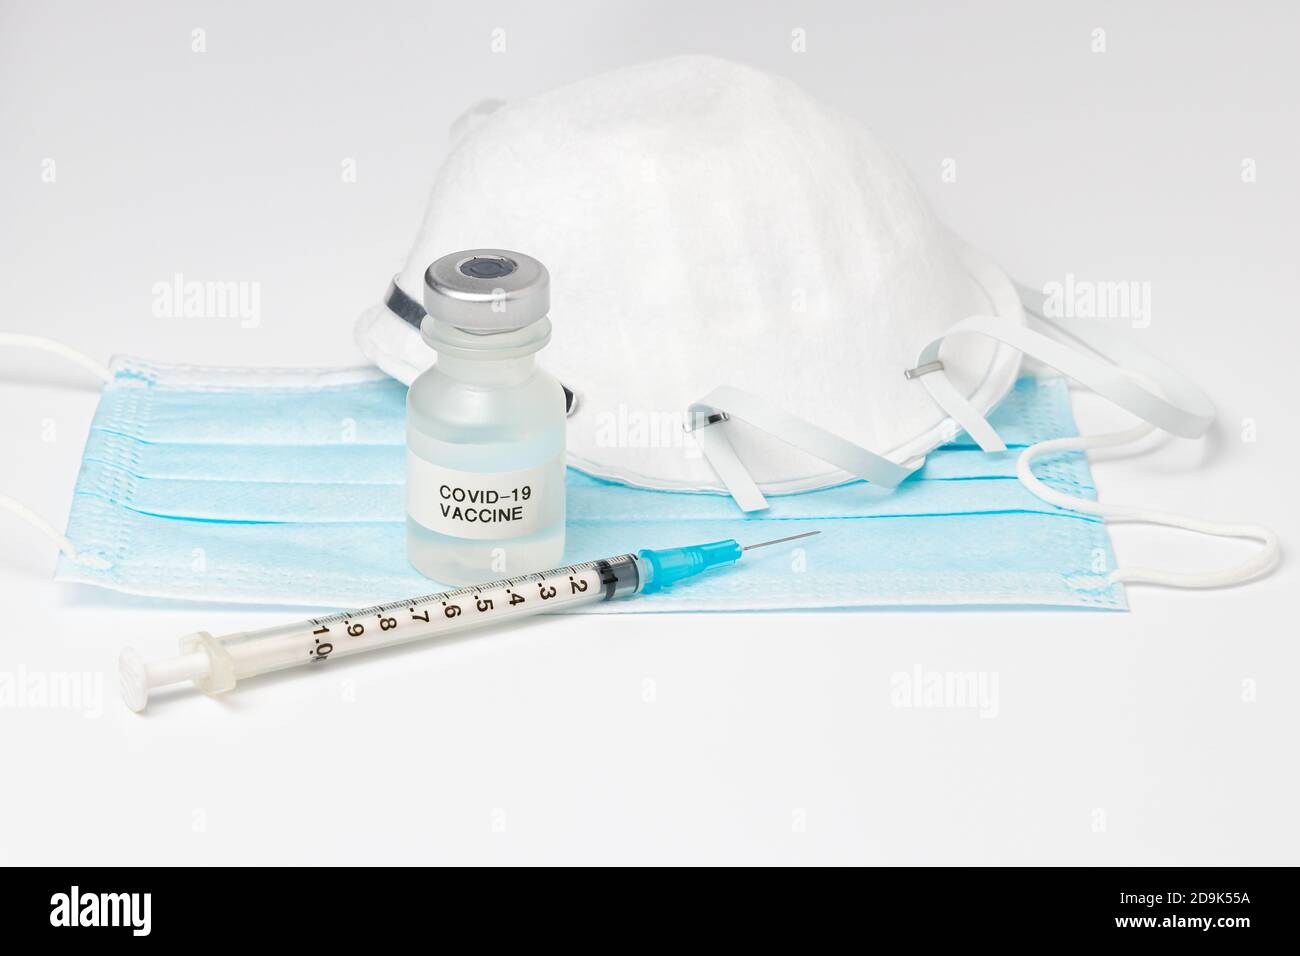 Fläschchen mit Covid-19-Impfstoff, Spritze und Nadel und Gesichtsmaske N95 isoliert auf weißem Hintergrund. Konzept der Coronavirus-Pandemie, Immunisierung Stockfoto